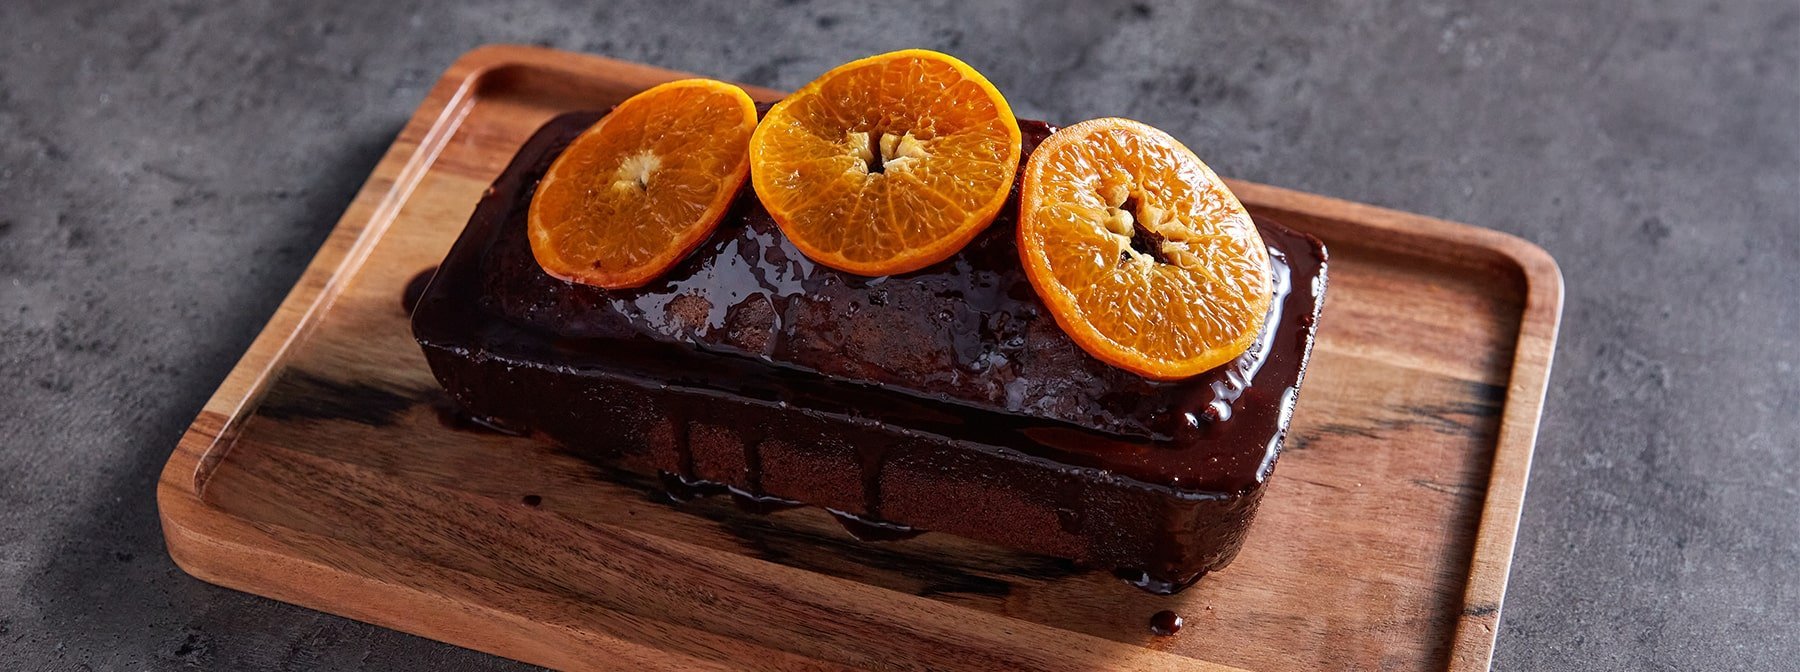 Csokoládés-narancsos fehérje sütemény